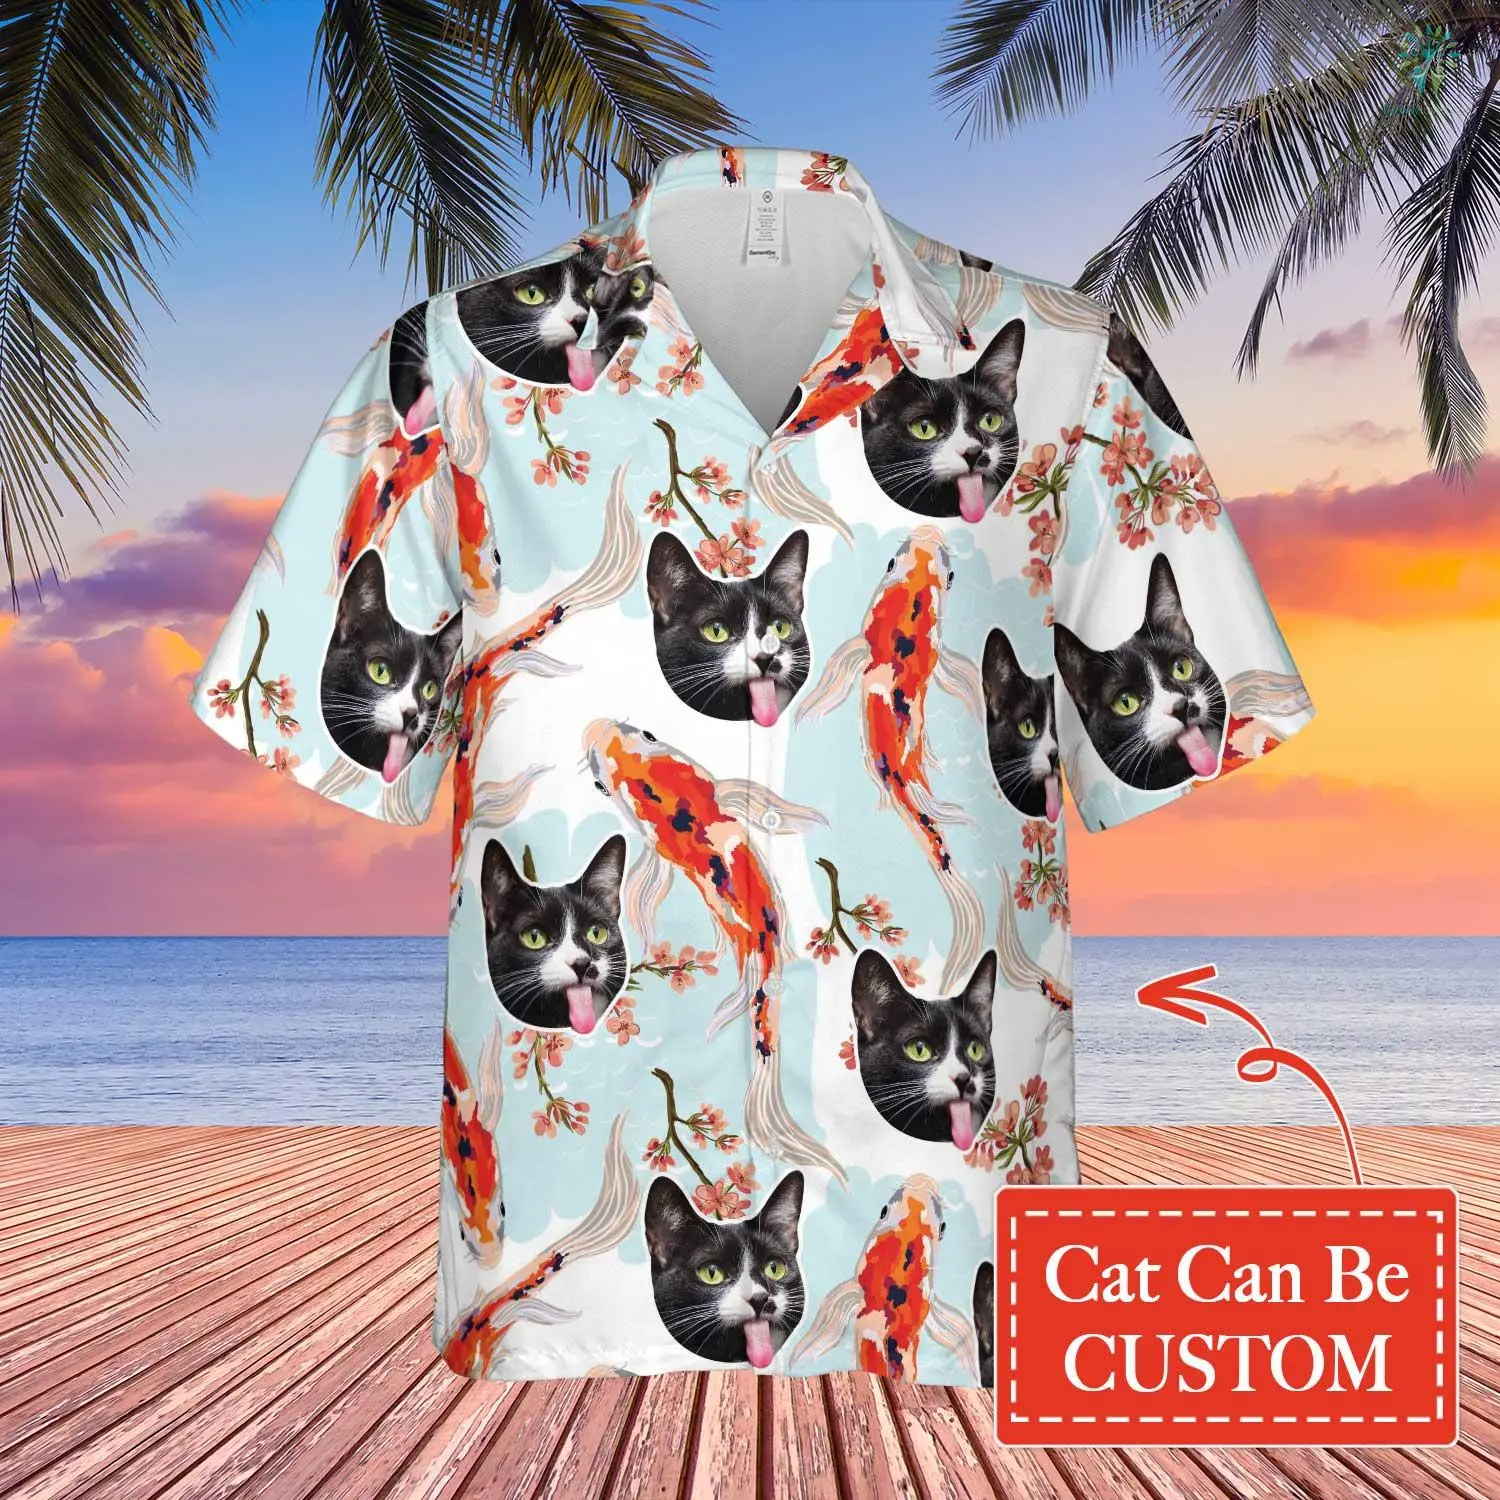 Fish And Funny Cat Hawaiian Custom Image Cat Summer Shirt Beach Hawaiian/ Hawaiian Shirt for Men Women/ Cat Lover